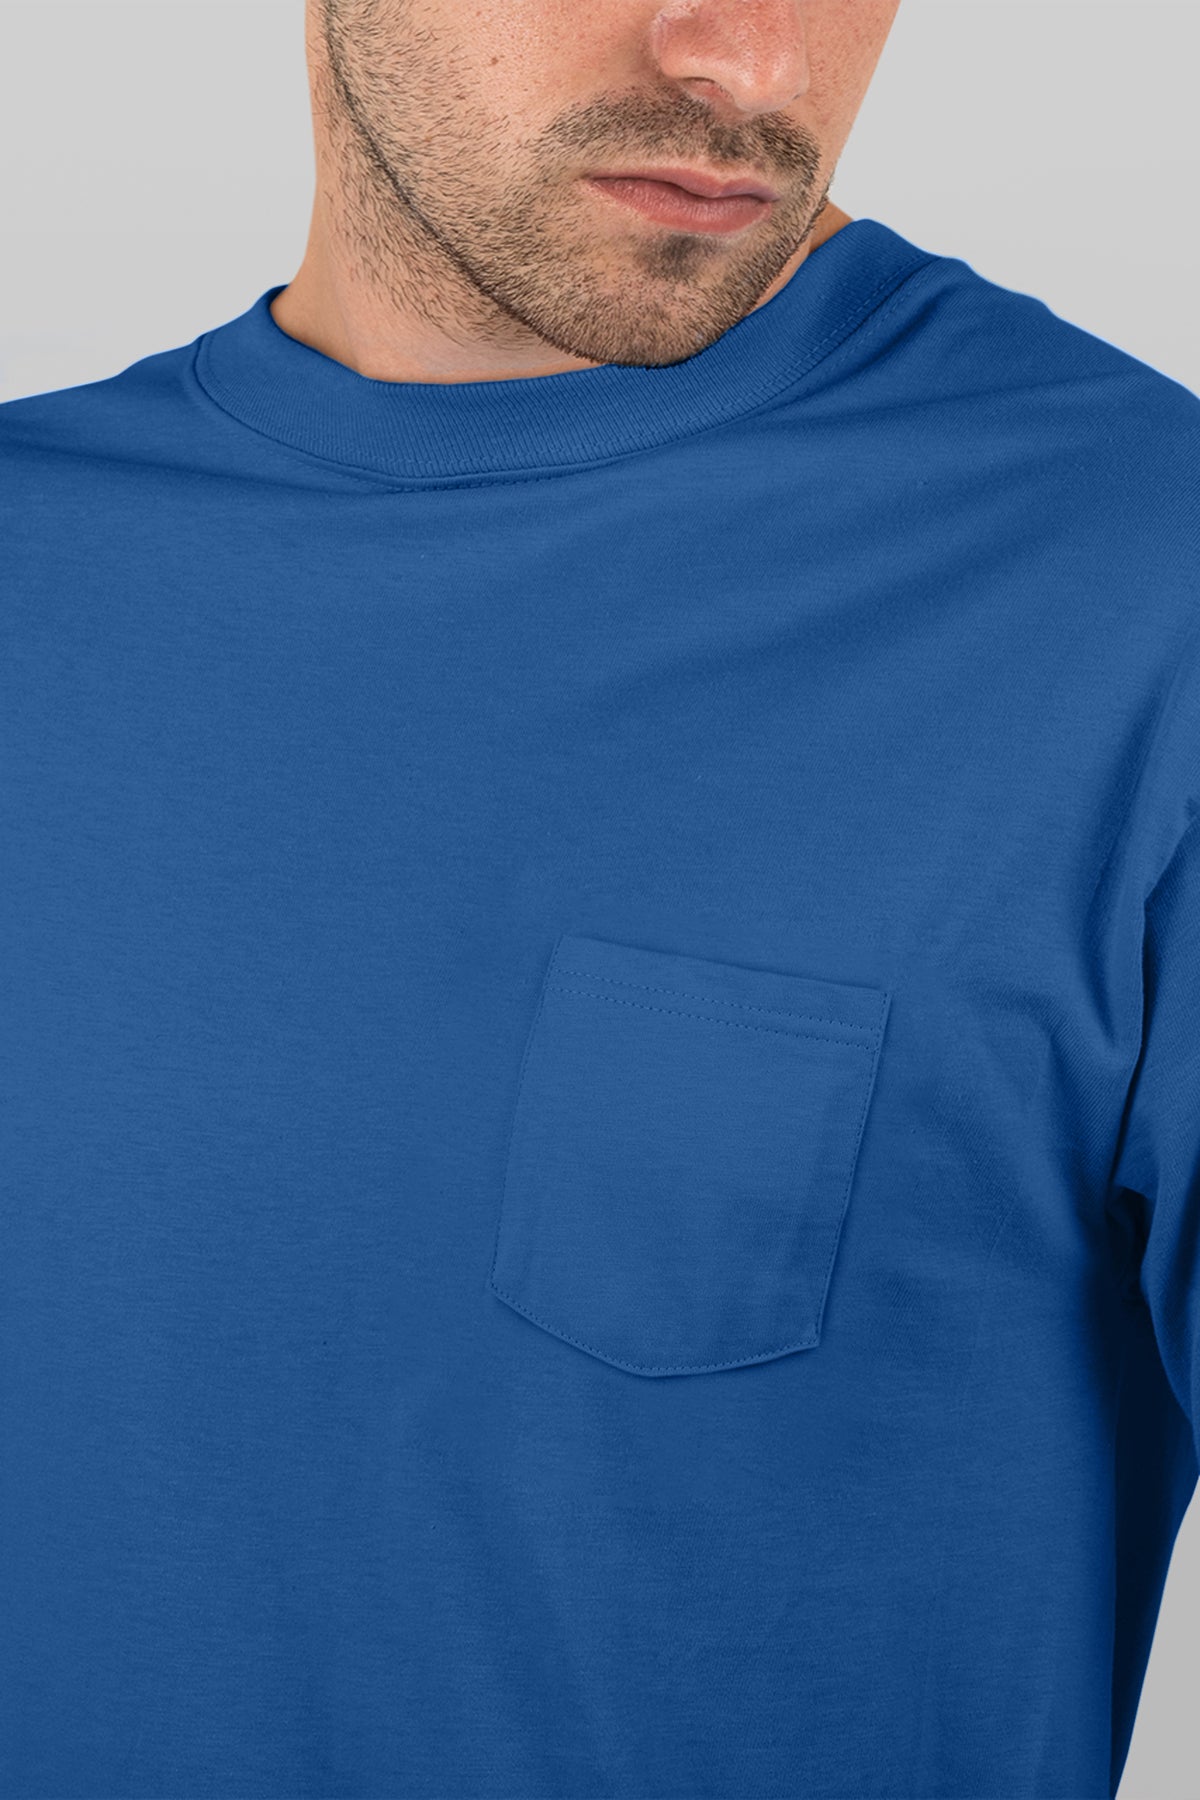 Premium Plain T-shirt : Royal Blue